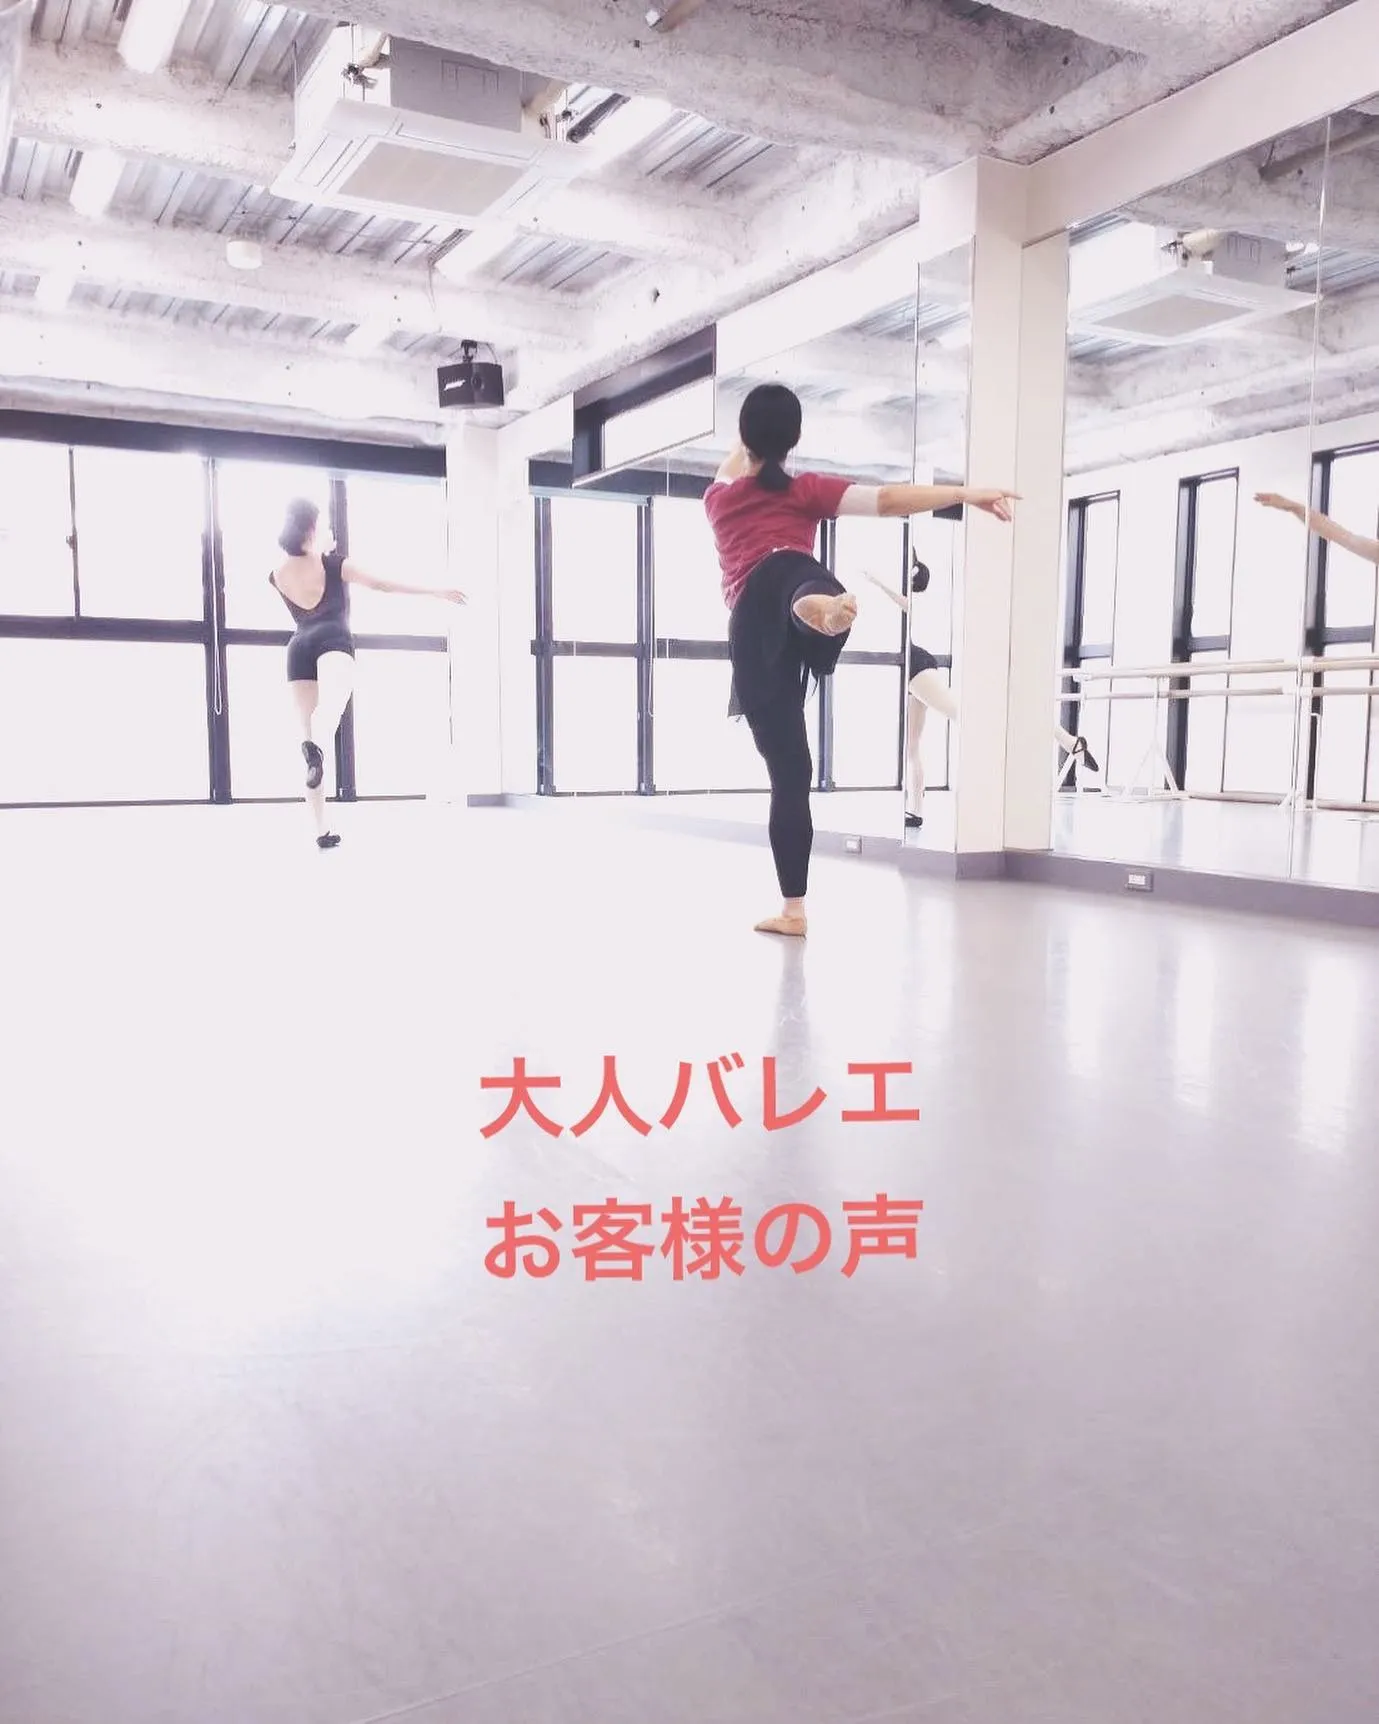 藤原彩香先生の朝バレエを受講されている方からメールをいただき...